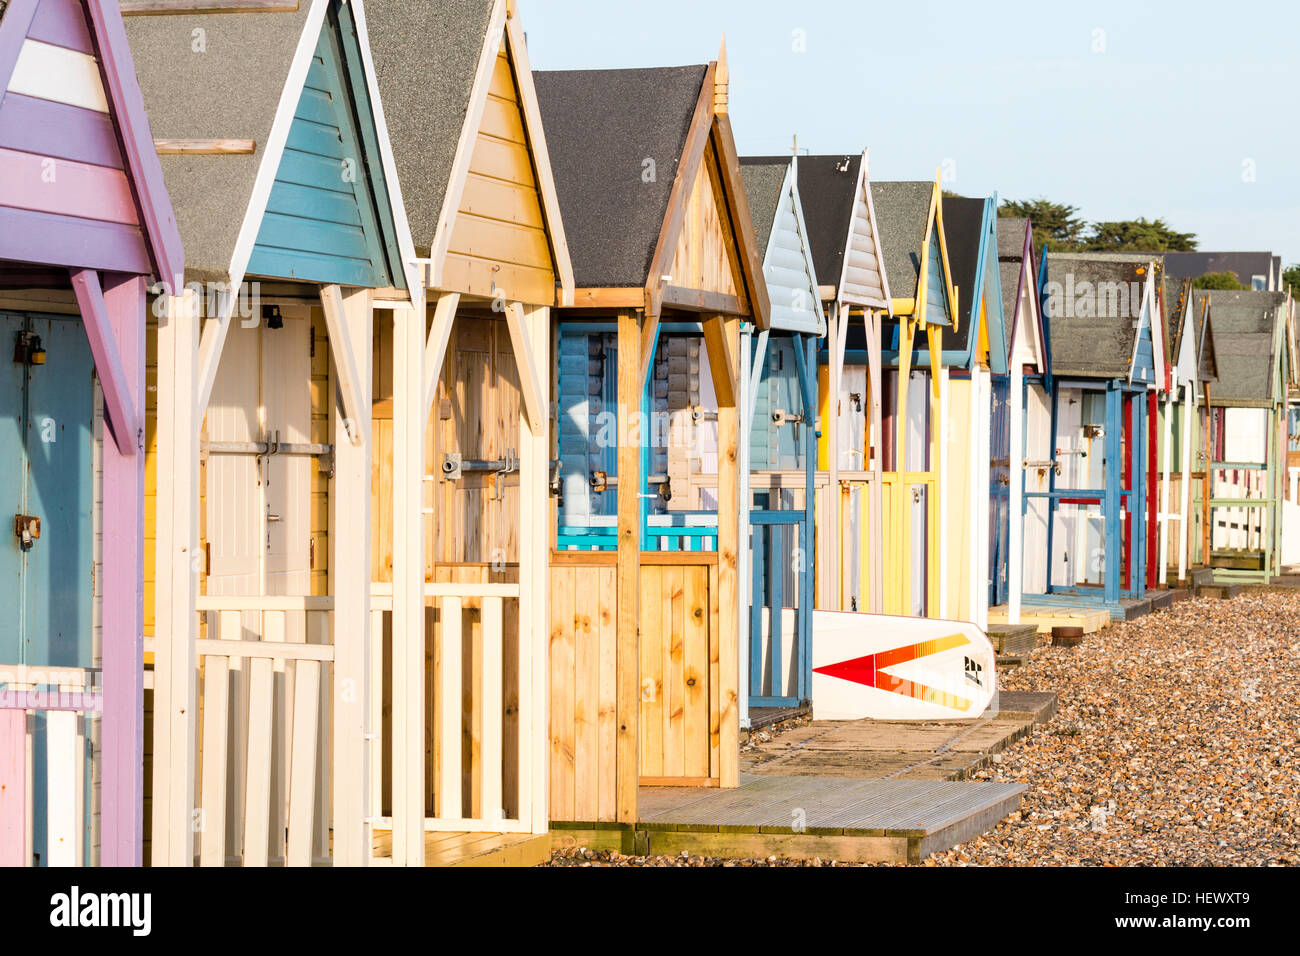 Le long de la rangée de cabines de plage traditionnel anglais à Herne Bay, sur la côte du Kent. Peint dans diverses principalement dans les tons pastel. Tôt le matin. Banque D'Images